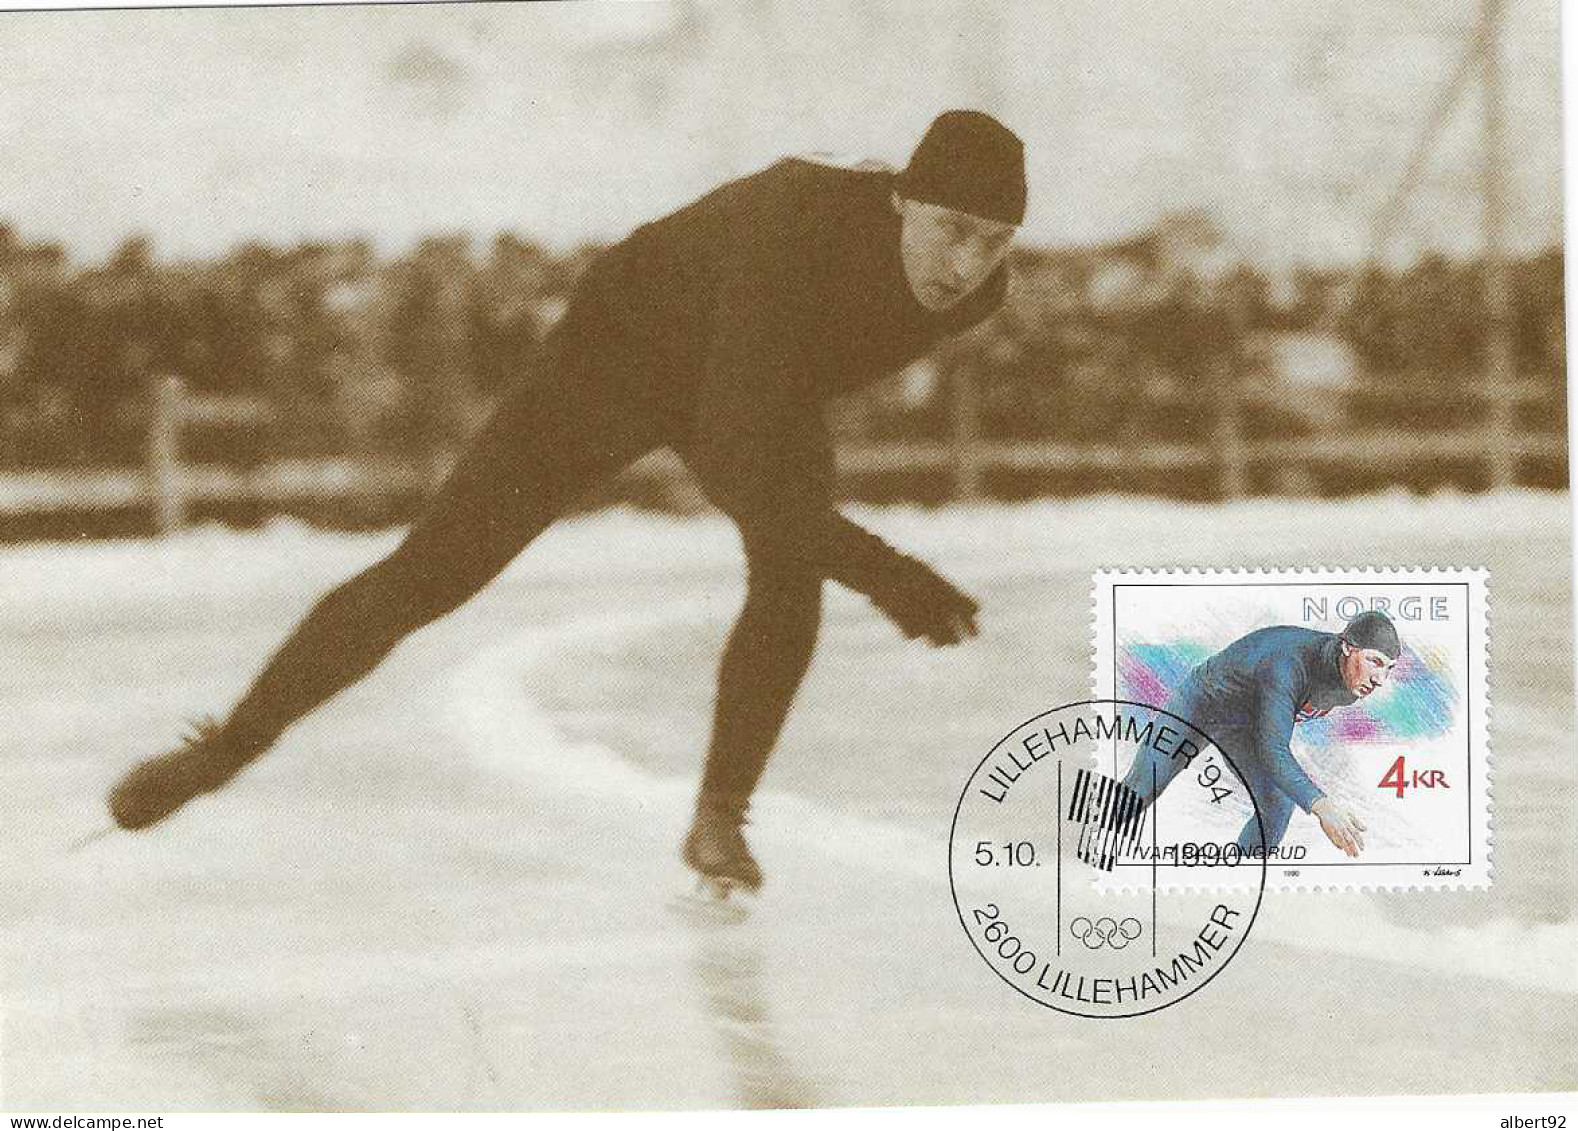 1990 Hommage à Ivar Ballangrud Patinage De Vitesse: Médaillé Or Aux Jeux Olympiques De Saint Moritz 1928 (5000m) - Invierno 1928: St-Morits